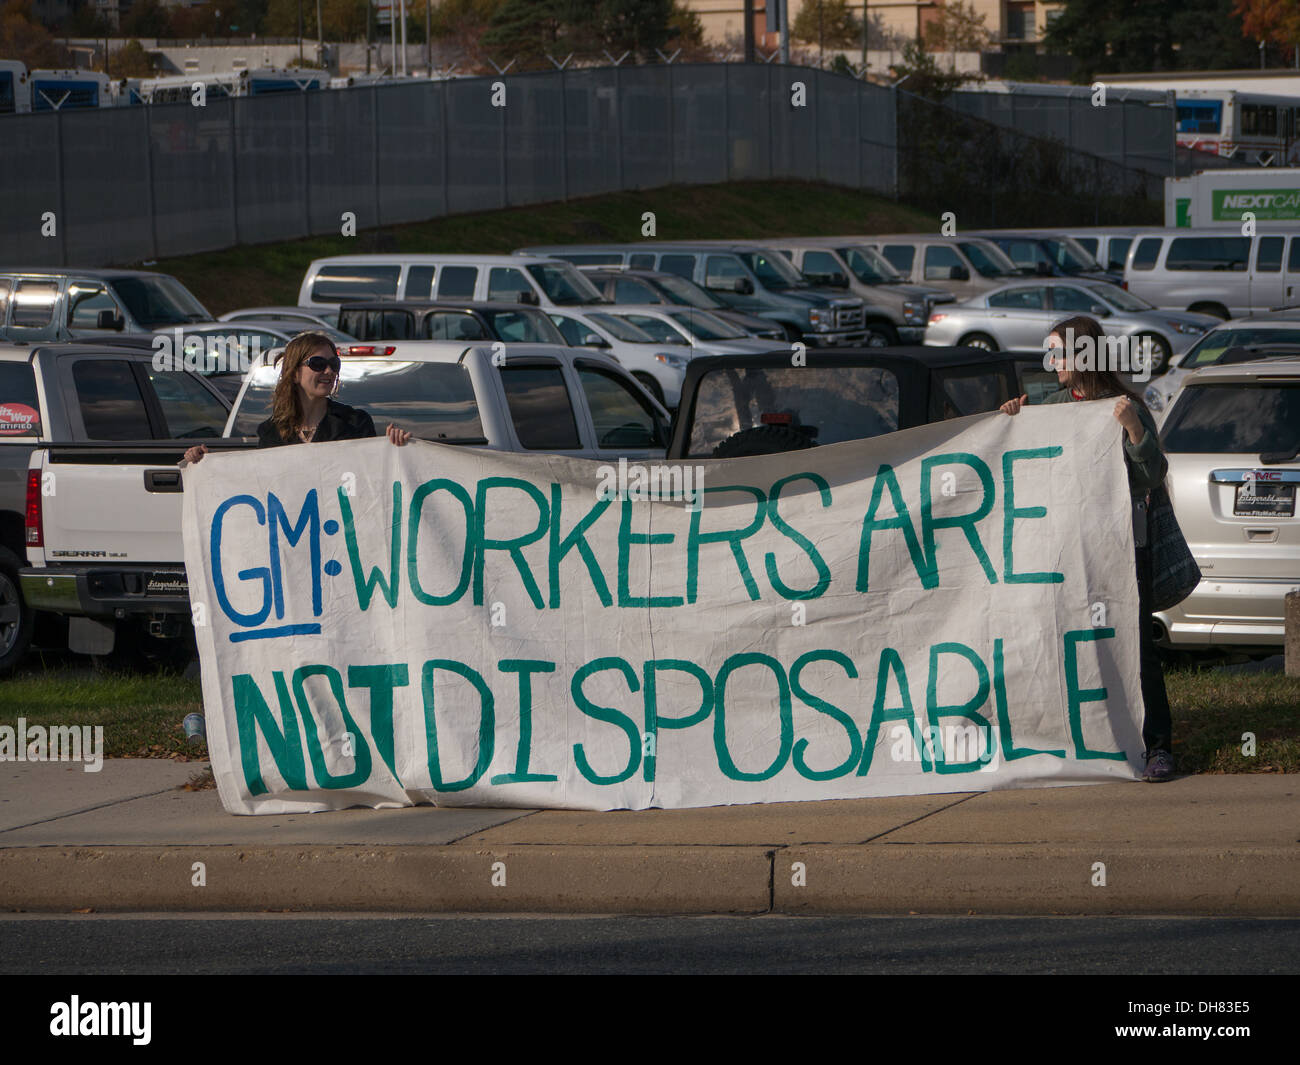 Gewerkschaftsmitglieder Streikposten General Motors Auto viel in Maryland, USA. Solidarität w / GM-Arbeitern in Kolumbien nach Arbeitsunfall gefeuert. Stockfoto